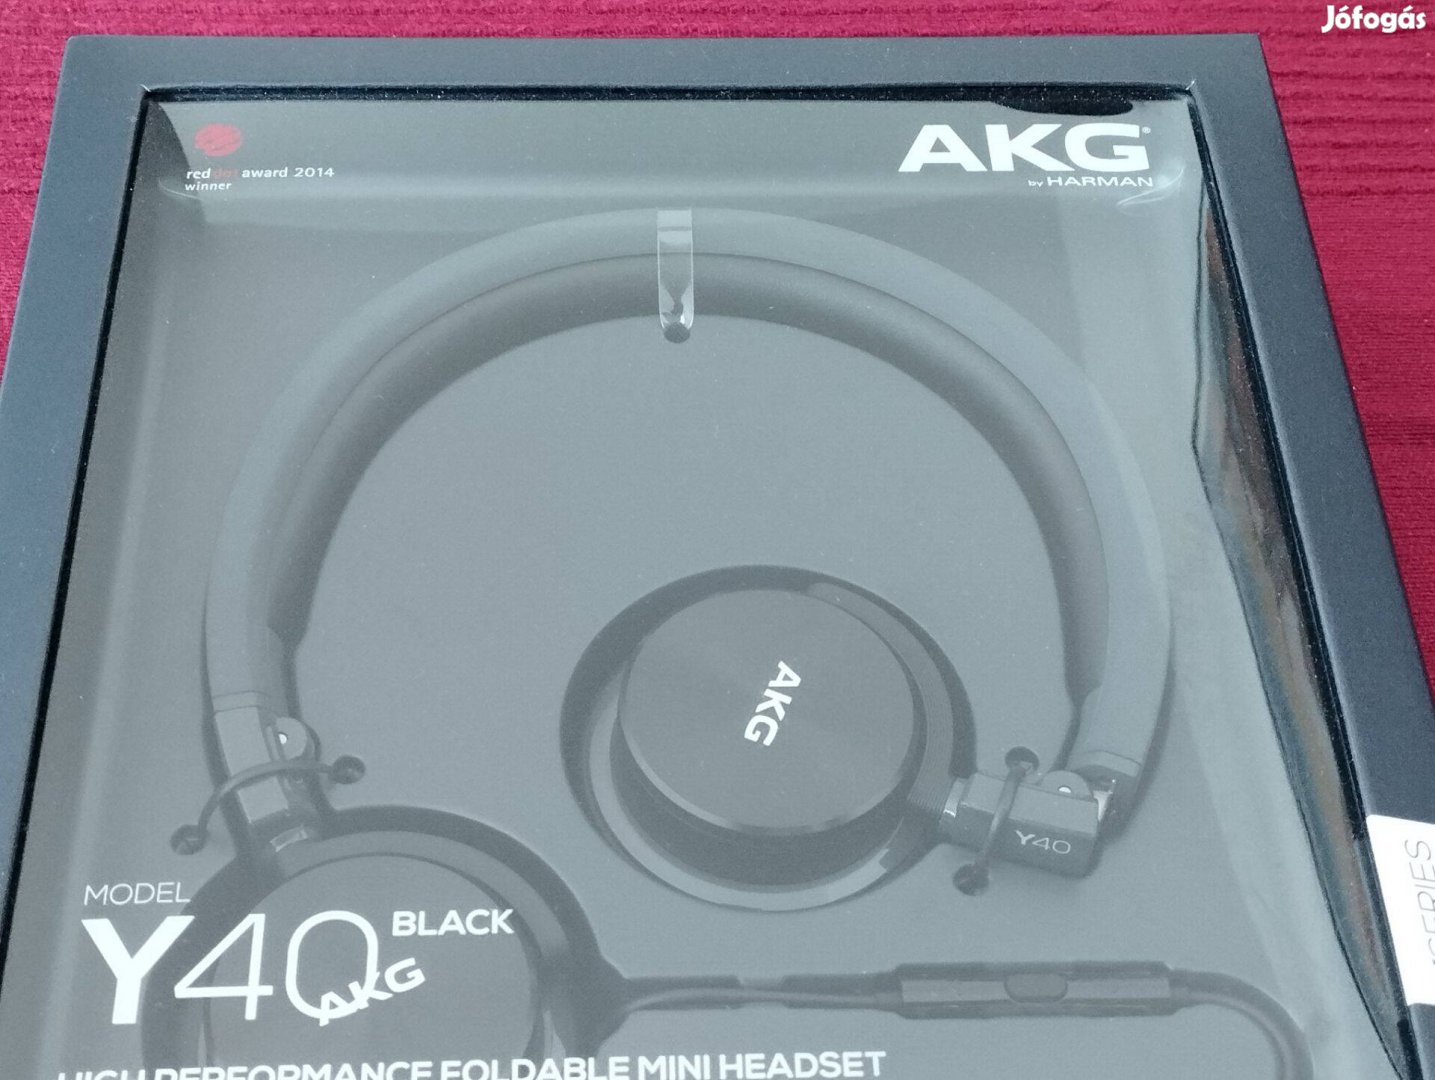 AKG Y40 fejhallgató, beépített mikrofonnal, új, bontatlan csomagolás